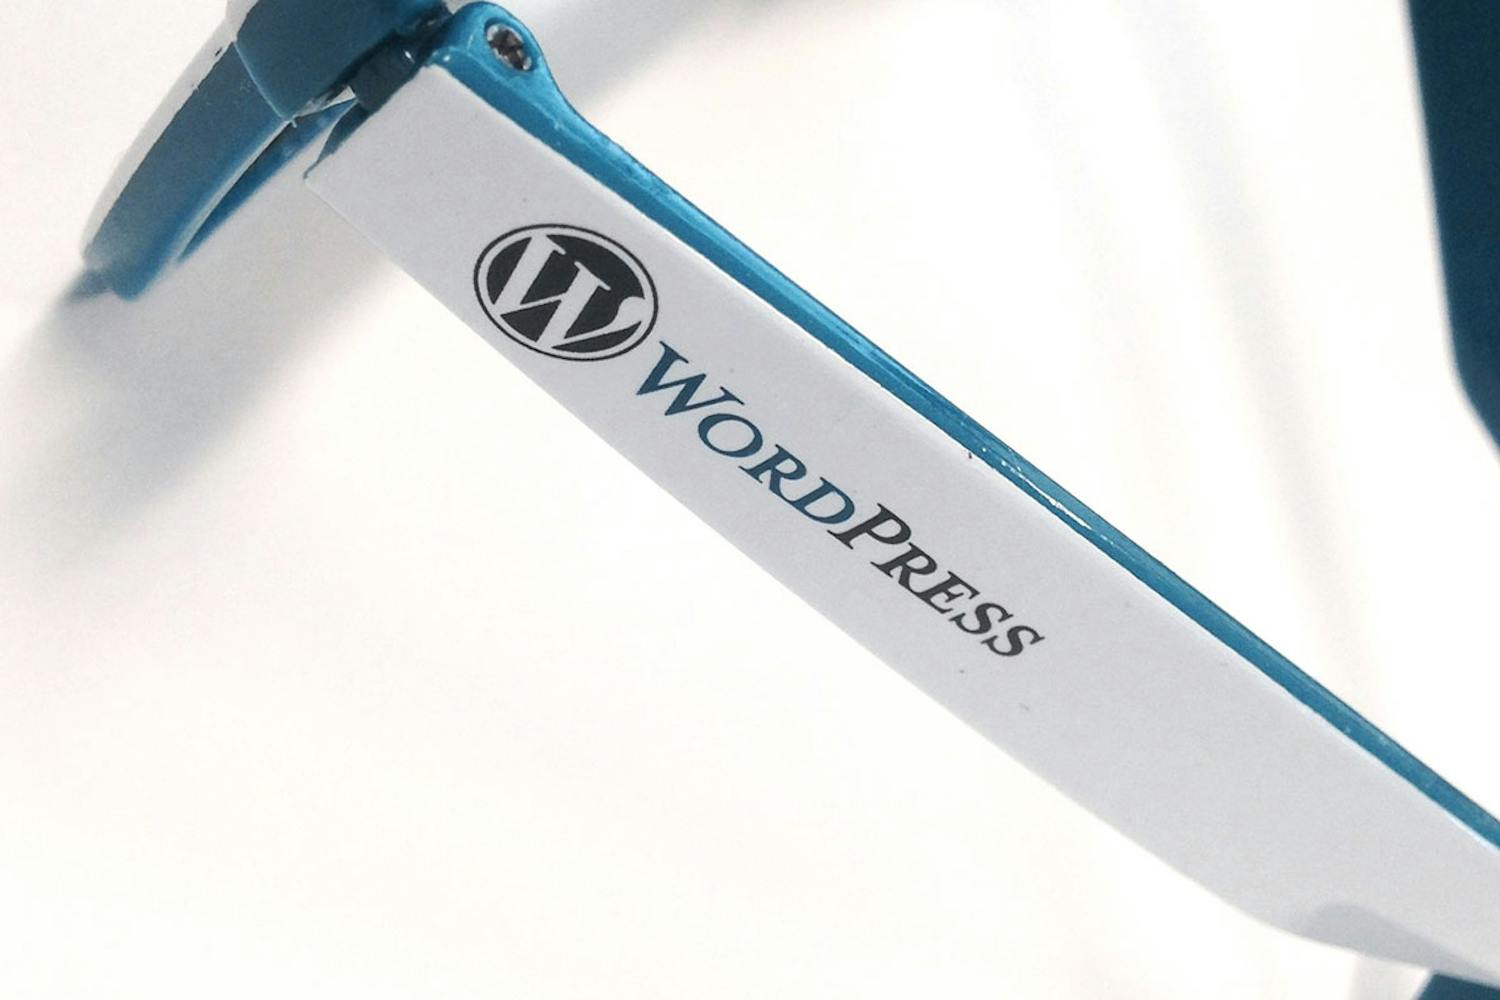 Macrobilde av siden til en brille hvor det står "Wordpress" med logo